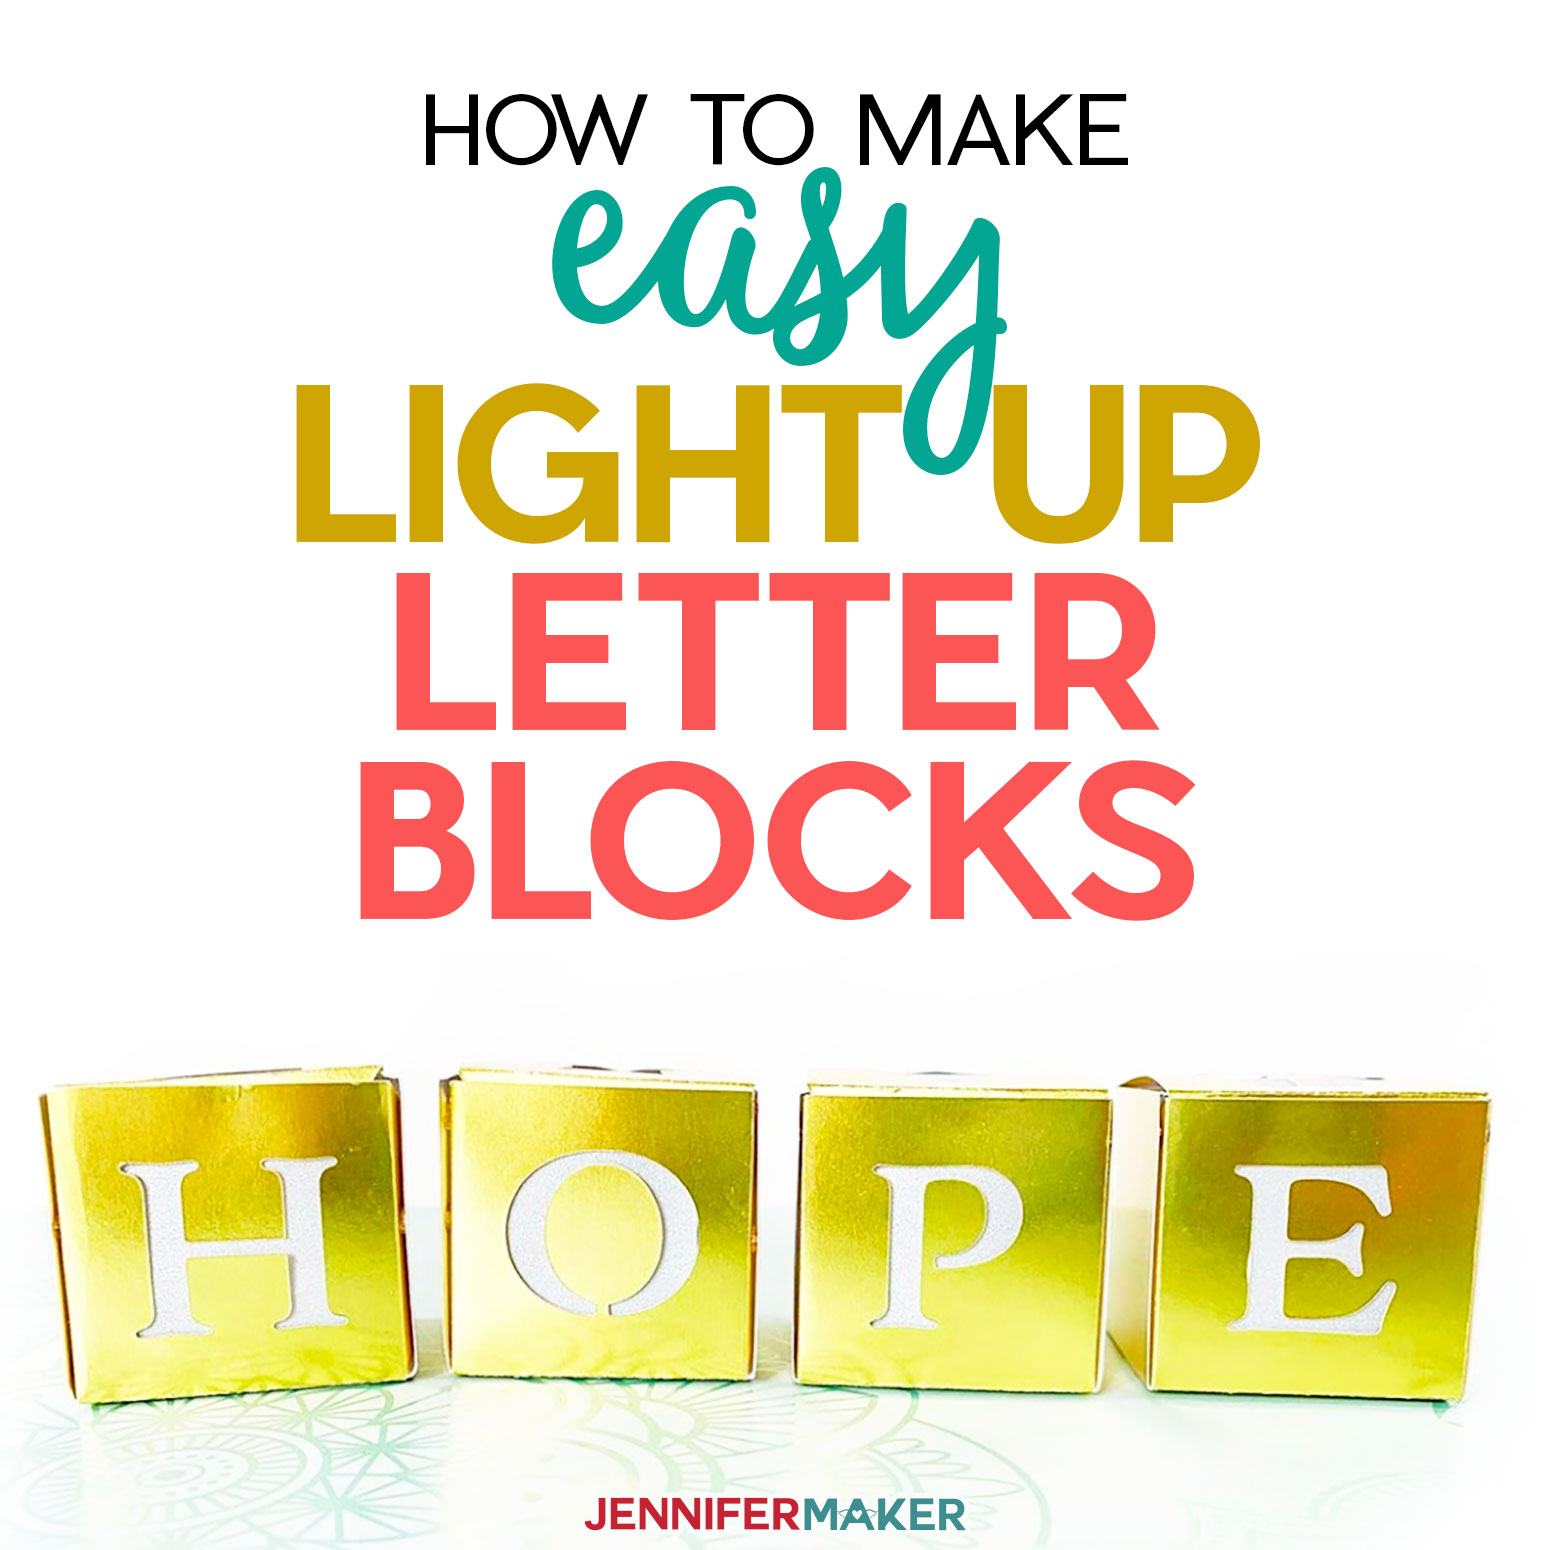 Easy Light Up Letter Blocks to Inspire & Uplift!